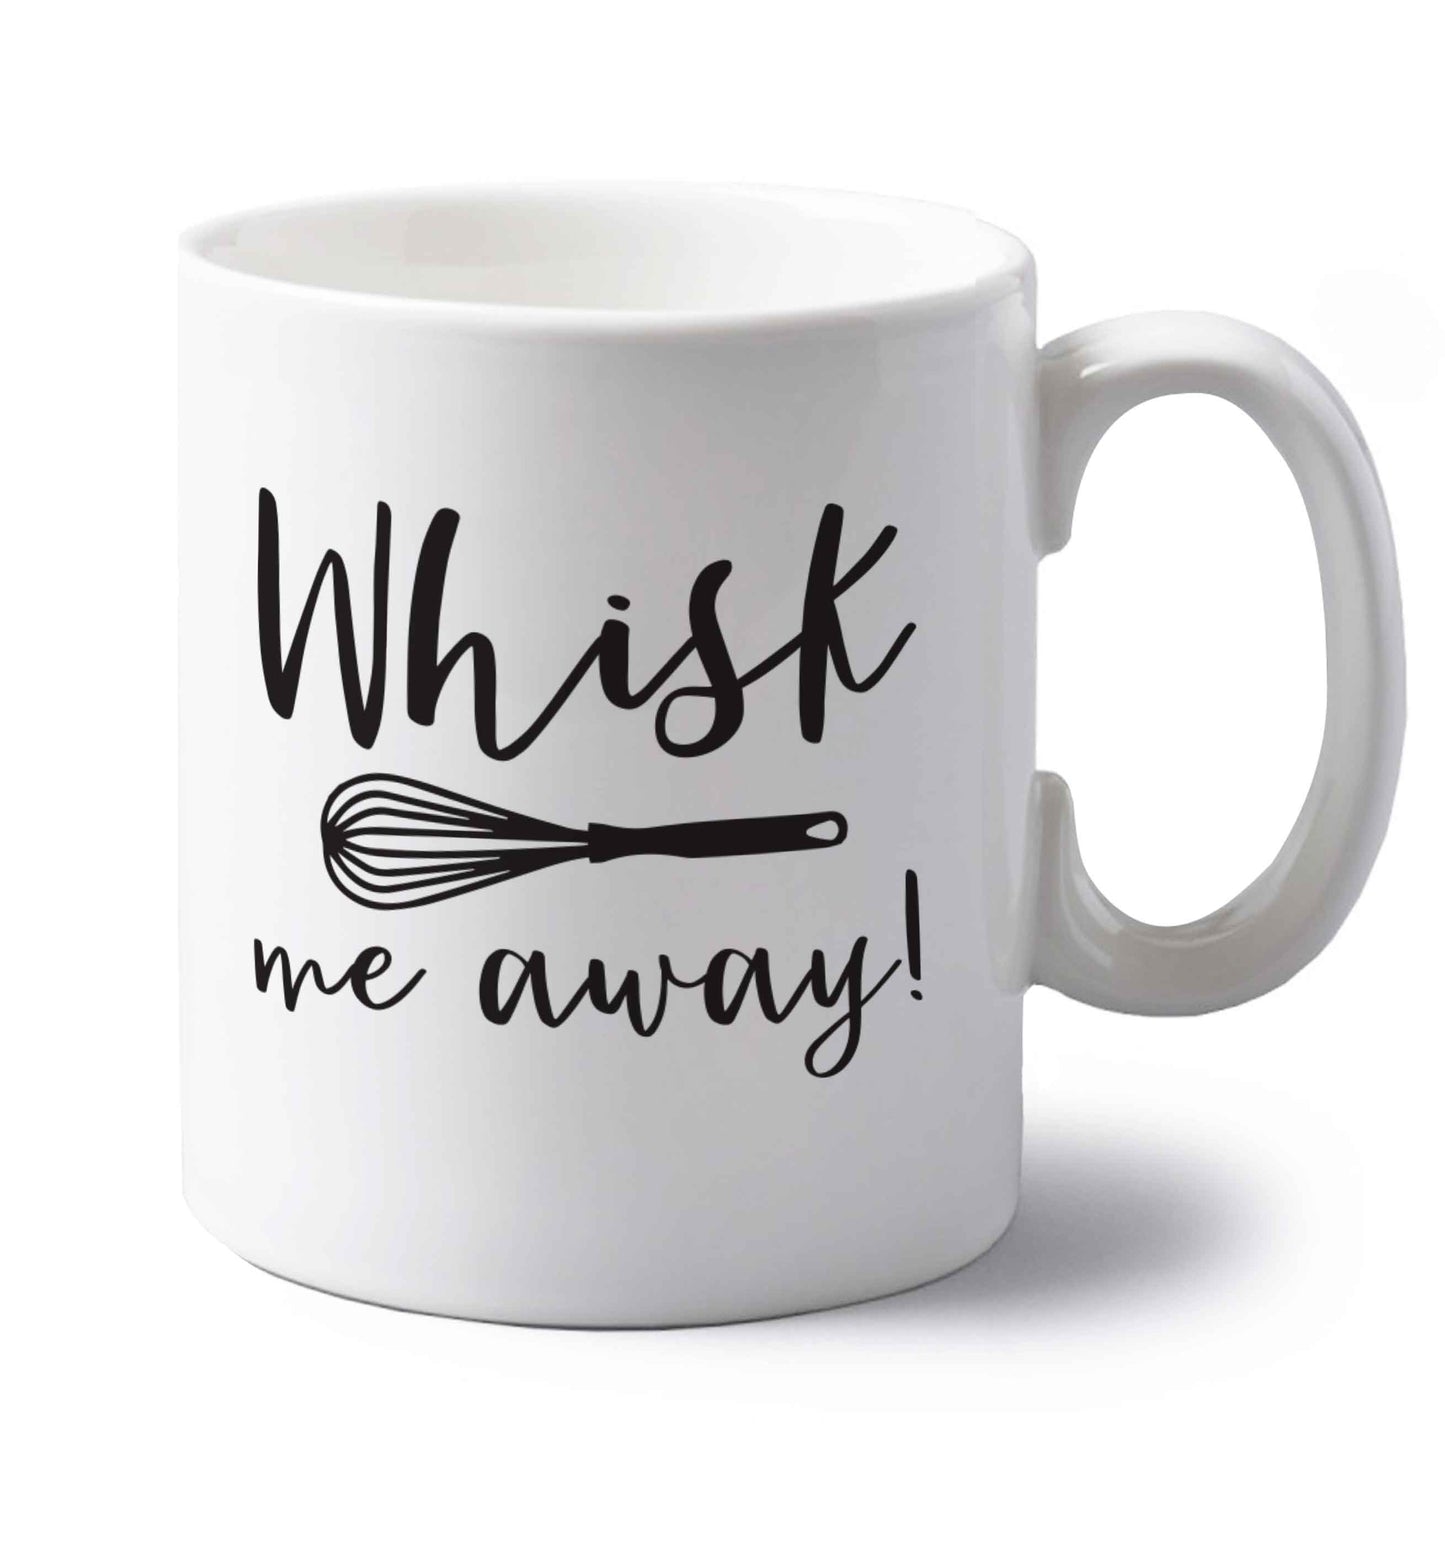 Whisk me away left handed white ceramic mug 